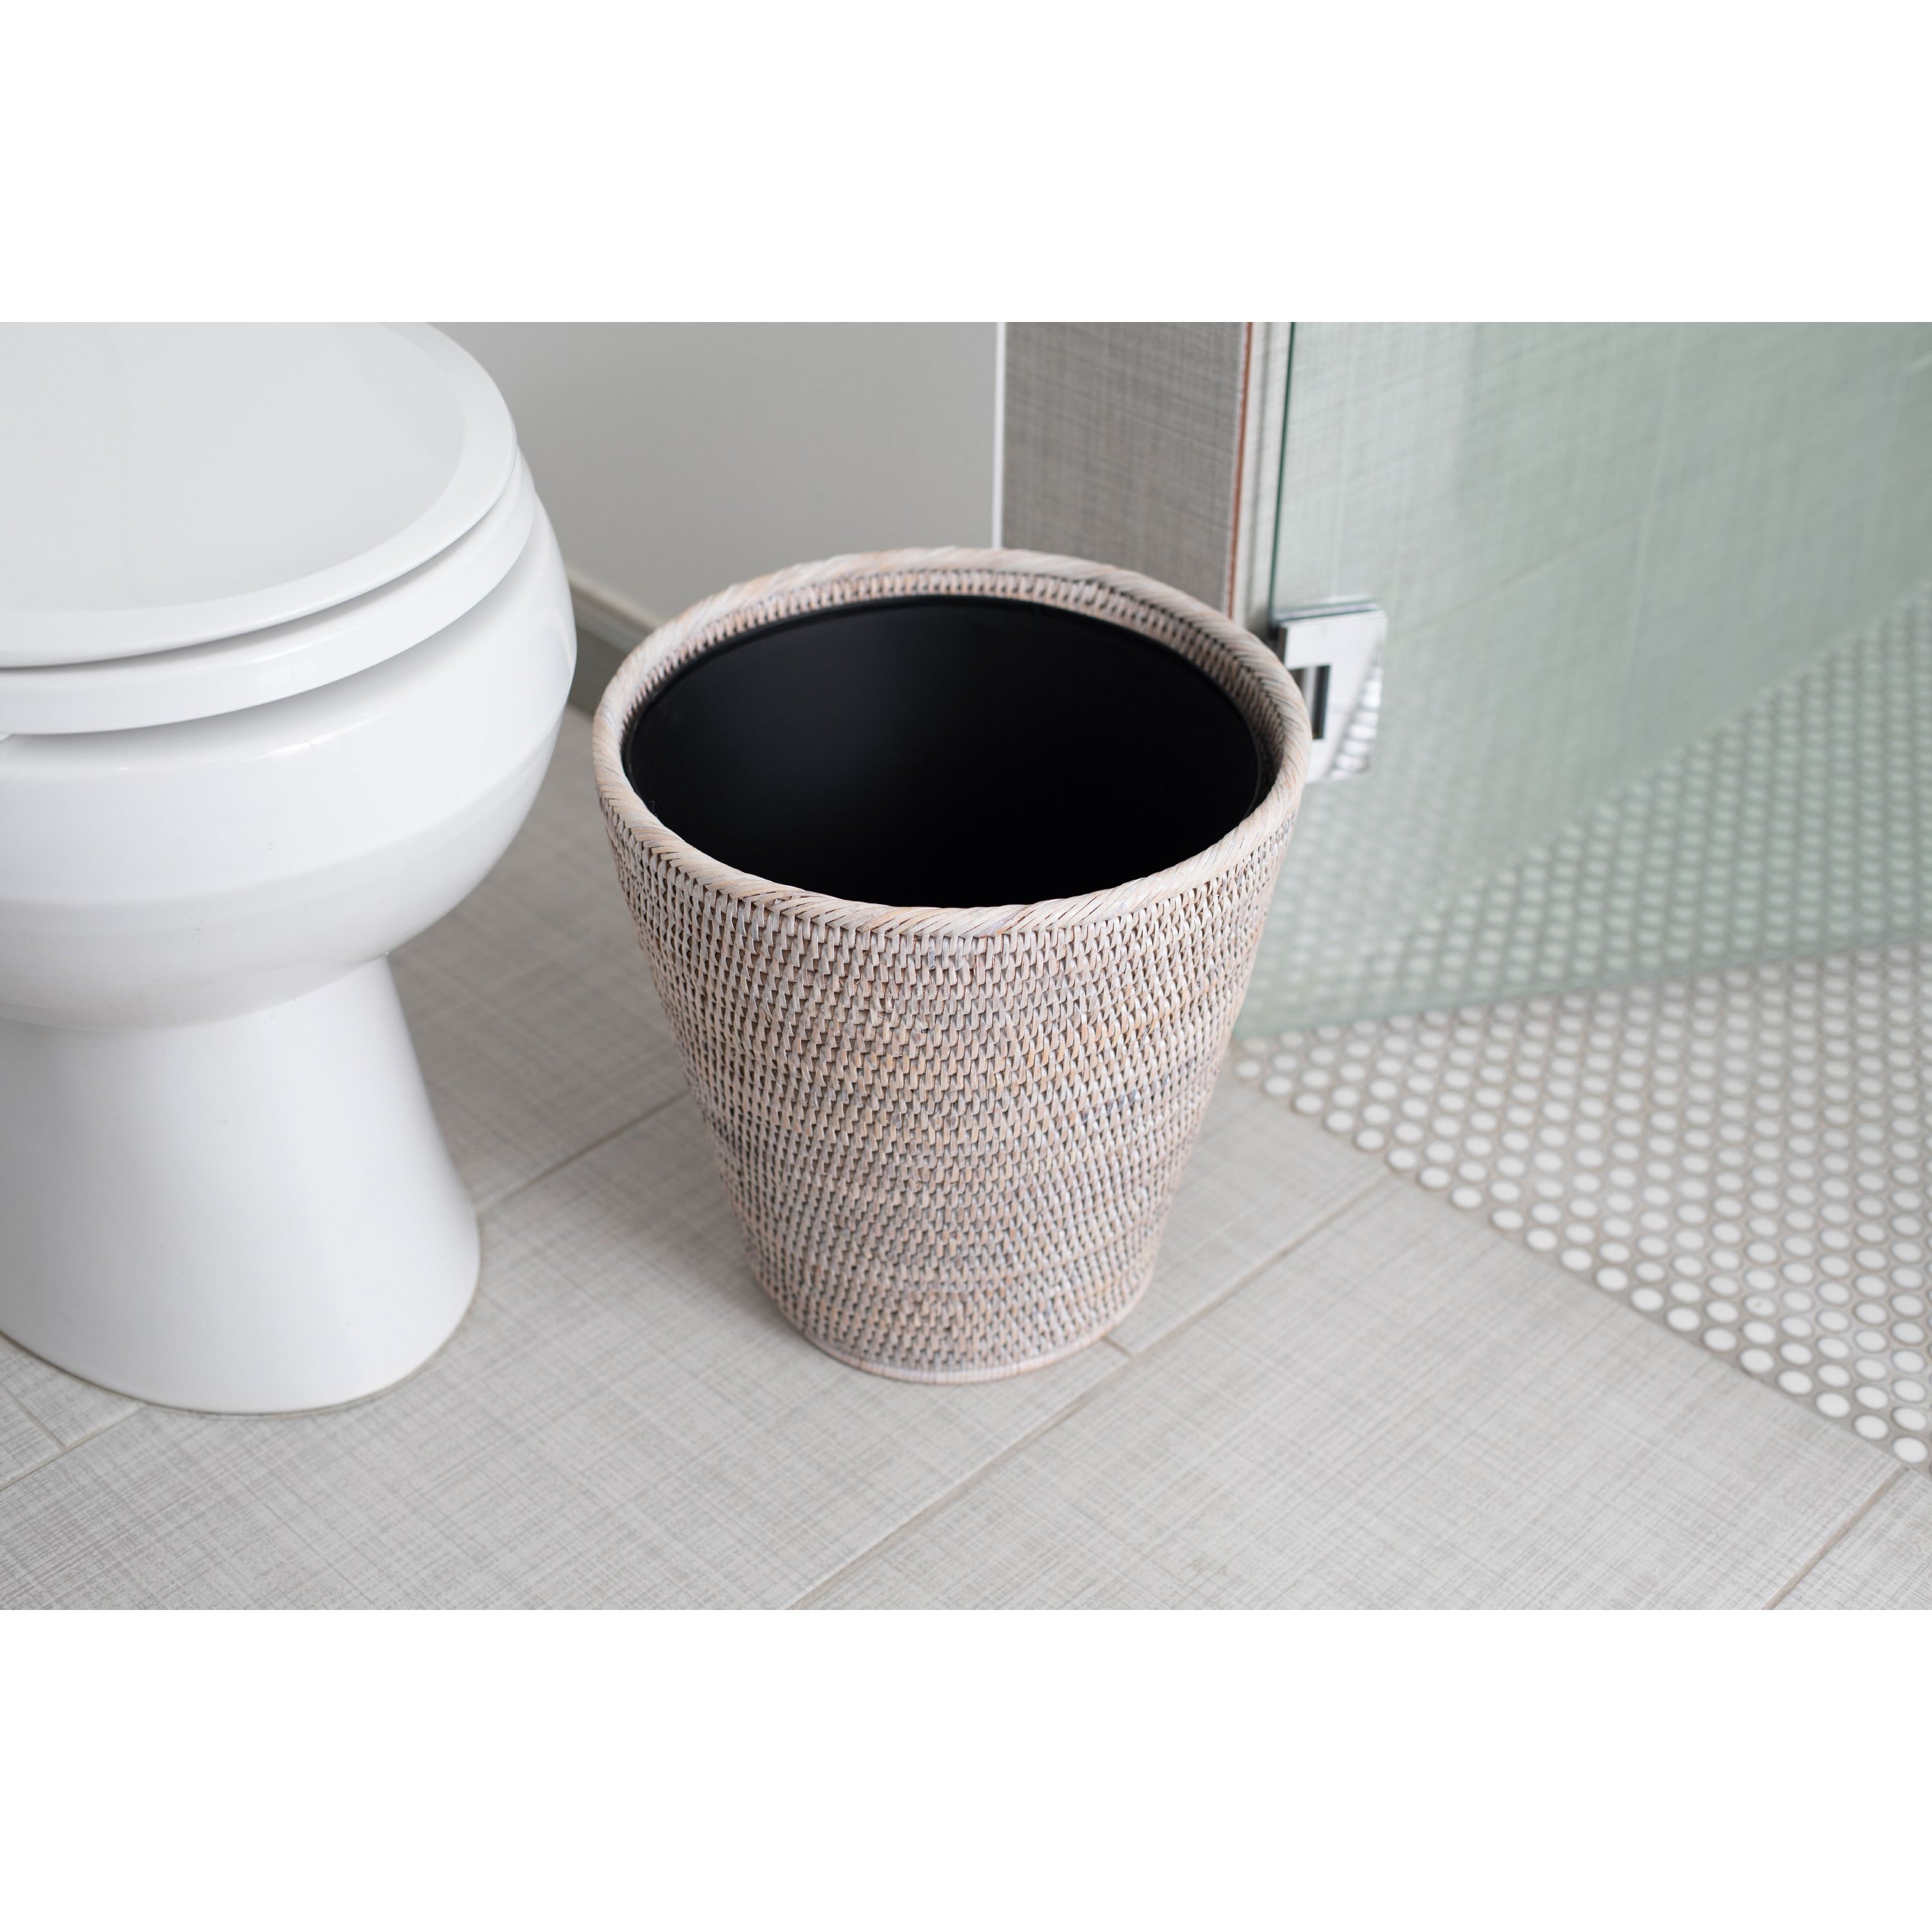 Round bathroom waste basket